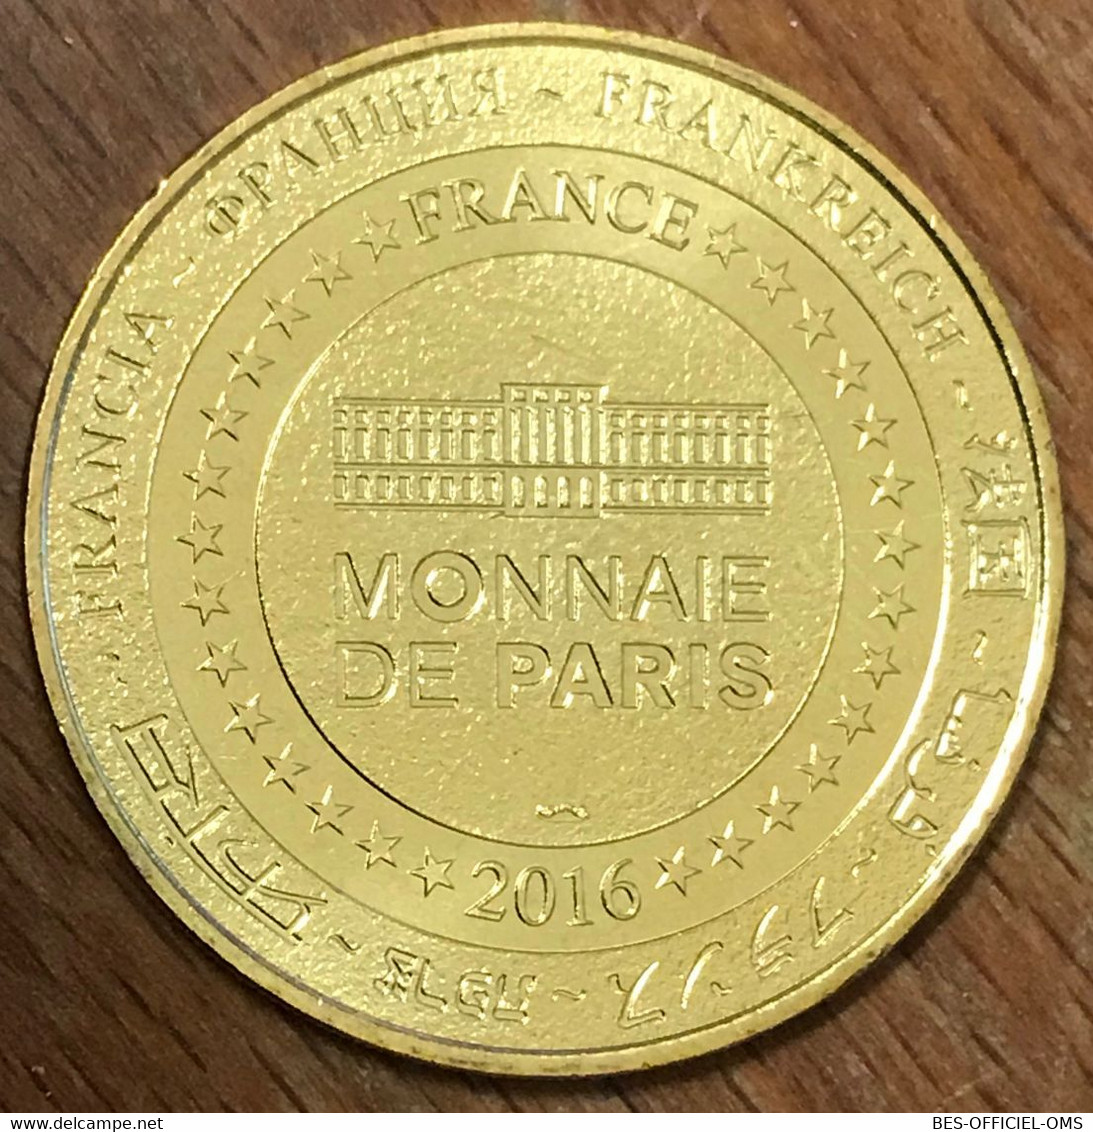 63 MAIRIE RONDE D'AMBERT MDP 2016 NG MÉDAILLE SOUVENIR MONNAIE DE PARIS JETON TOURISTIQUE MEDALS COINS TOKENS - 2016